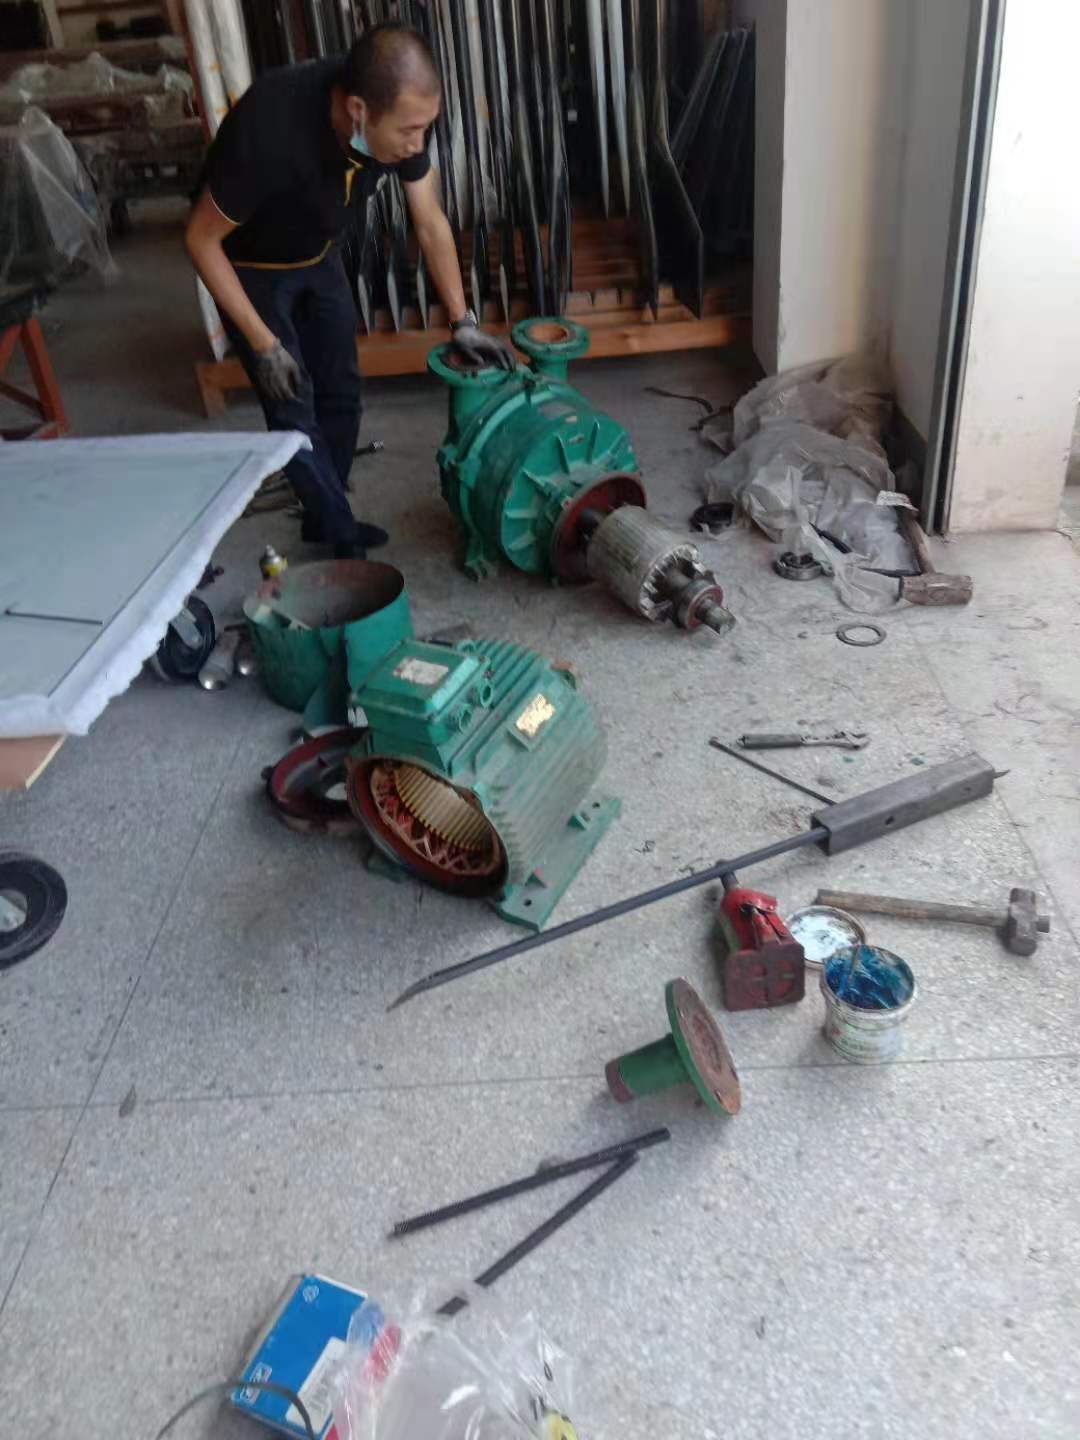 南京水泵维修保养厂家 本地施工团队 响应及时